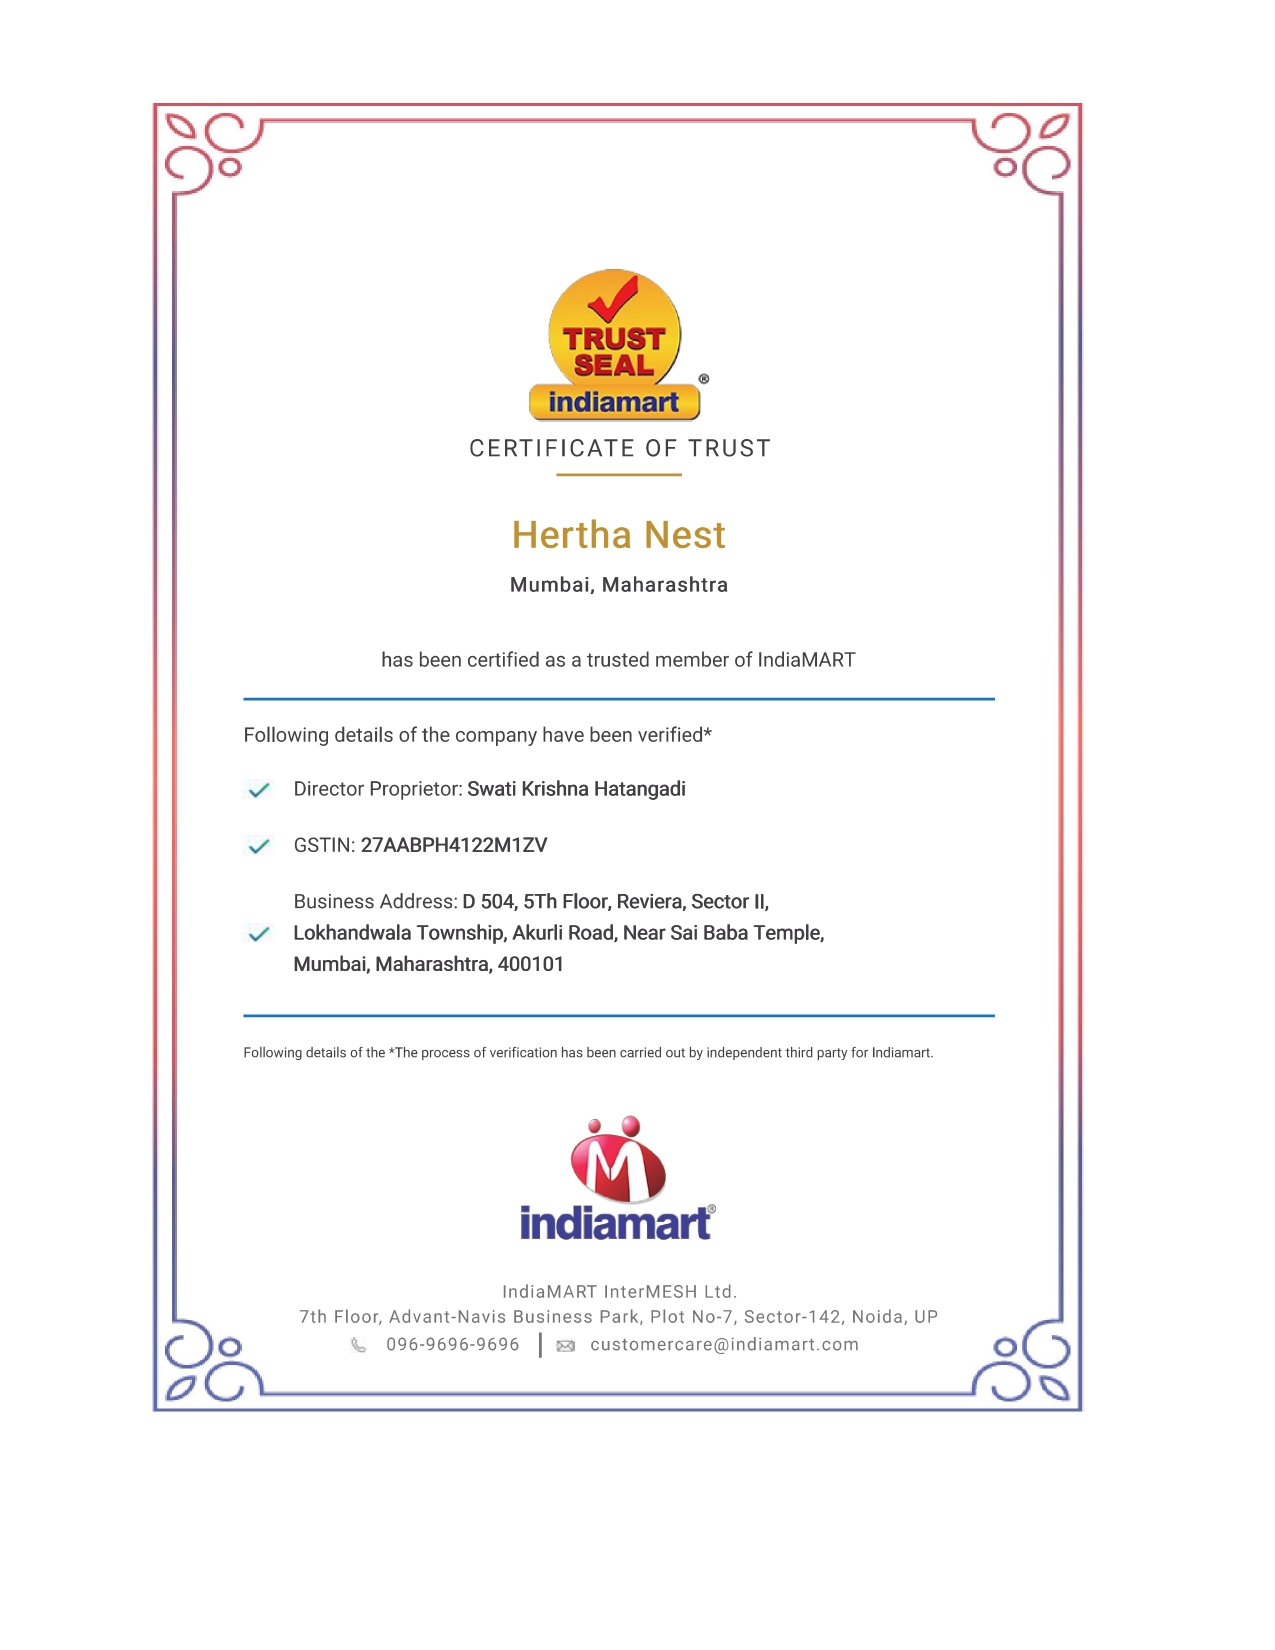 Indiamart-Trust-Seal-Certificate